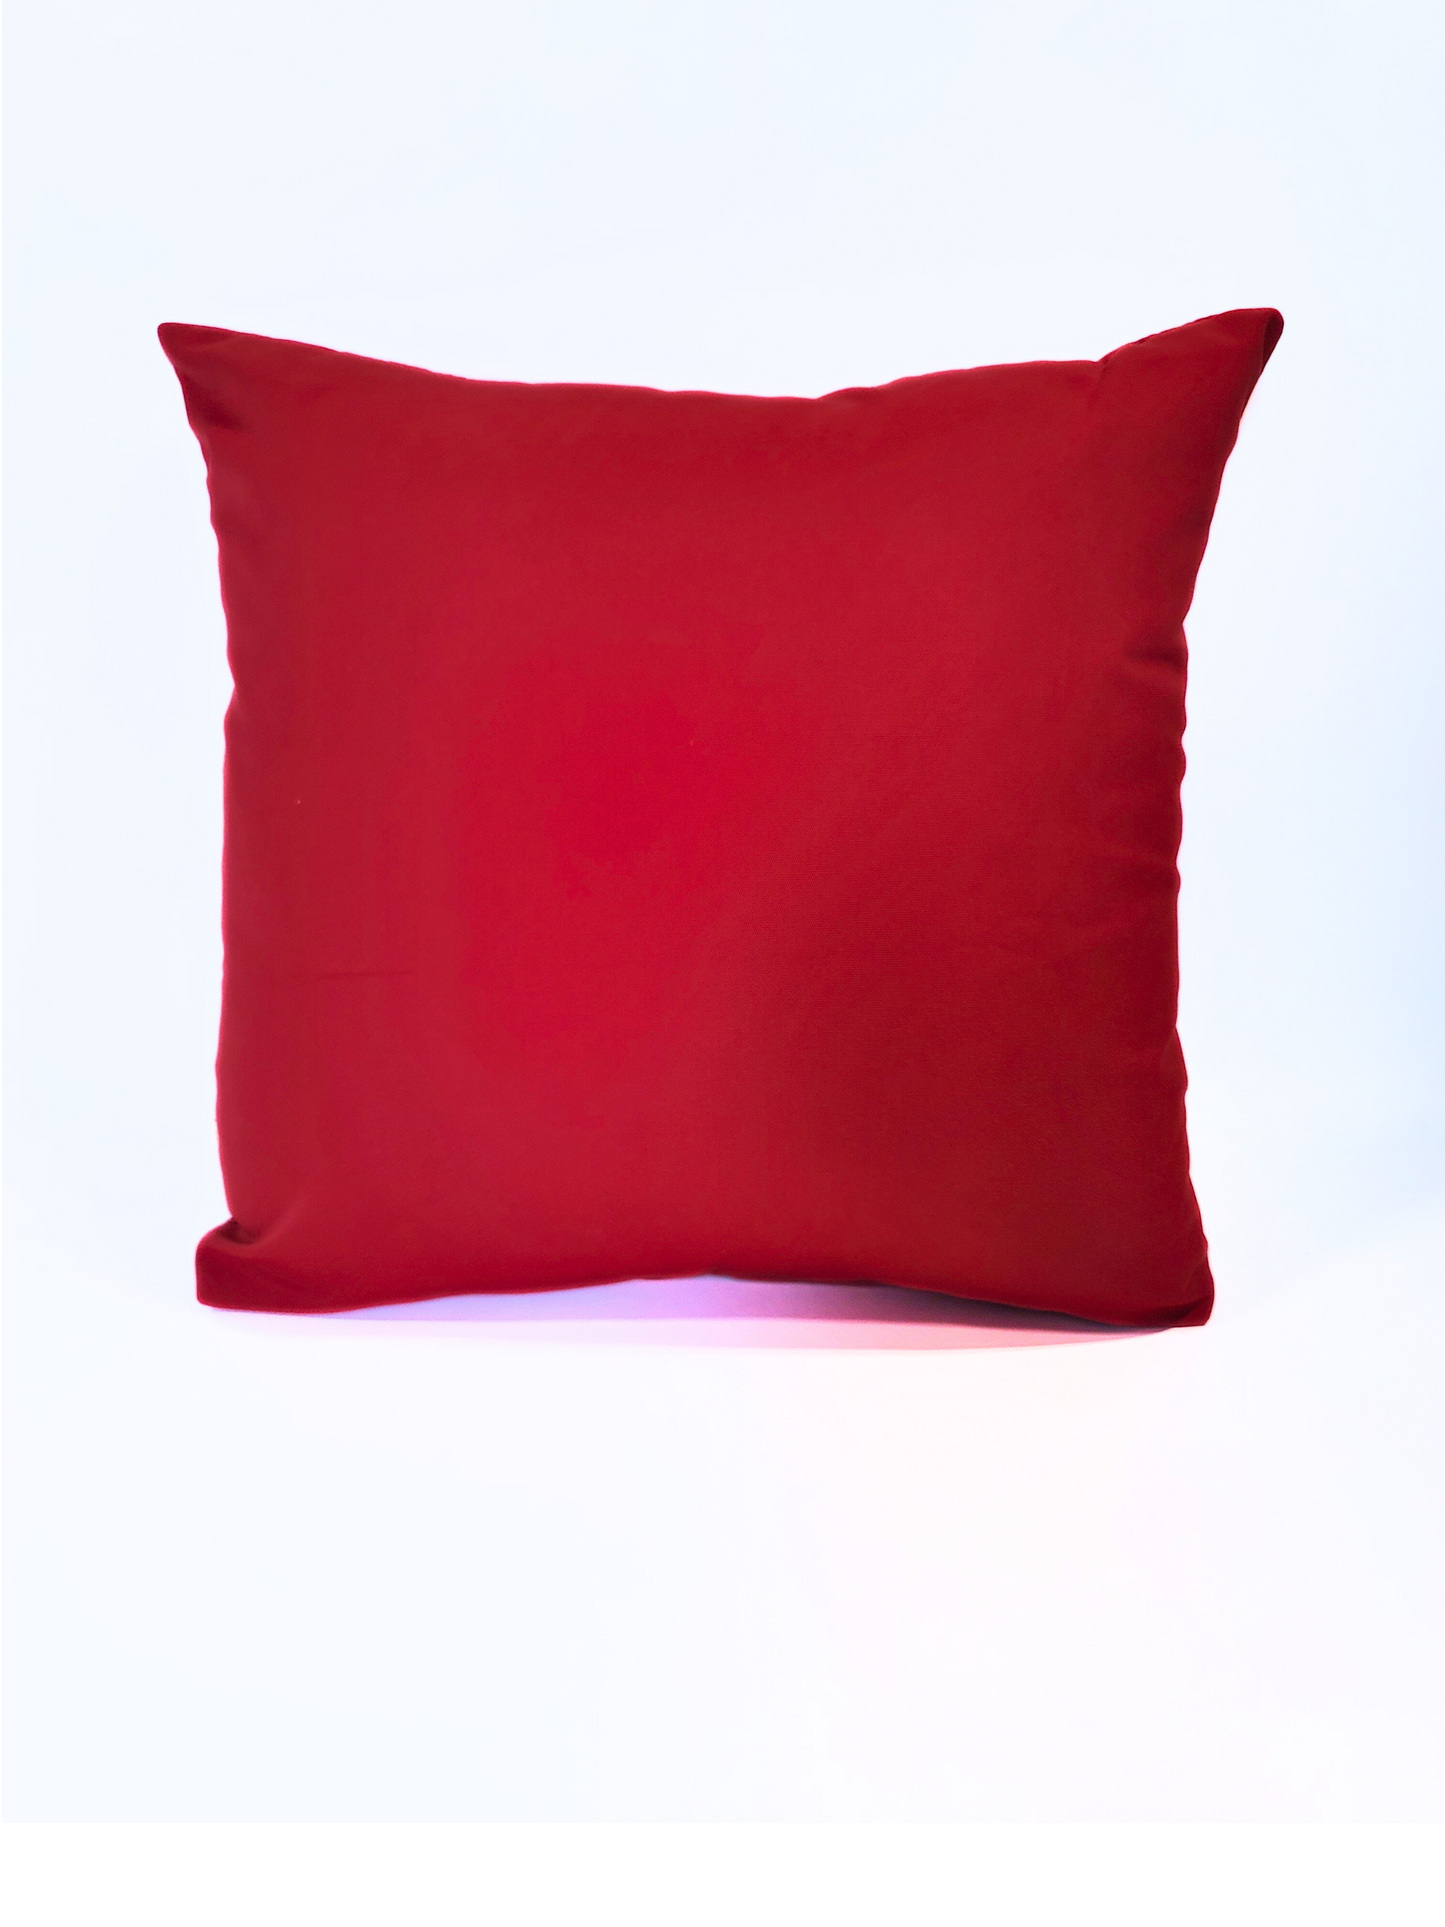 Sunbrella "Canvas Jockey Red" Toss Pillow Cover